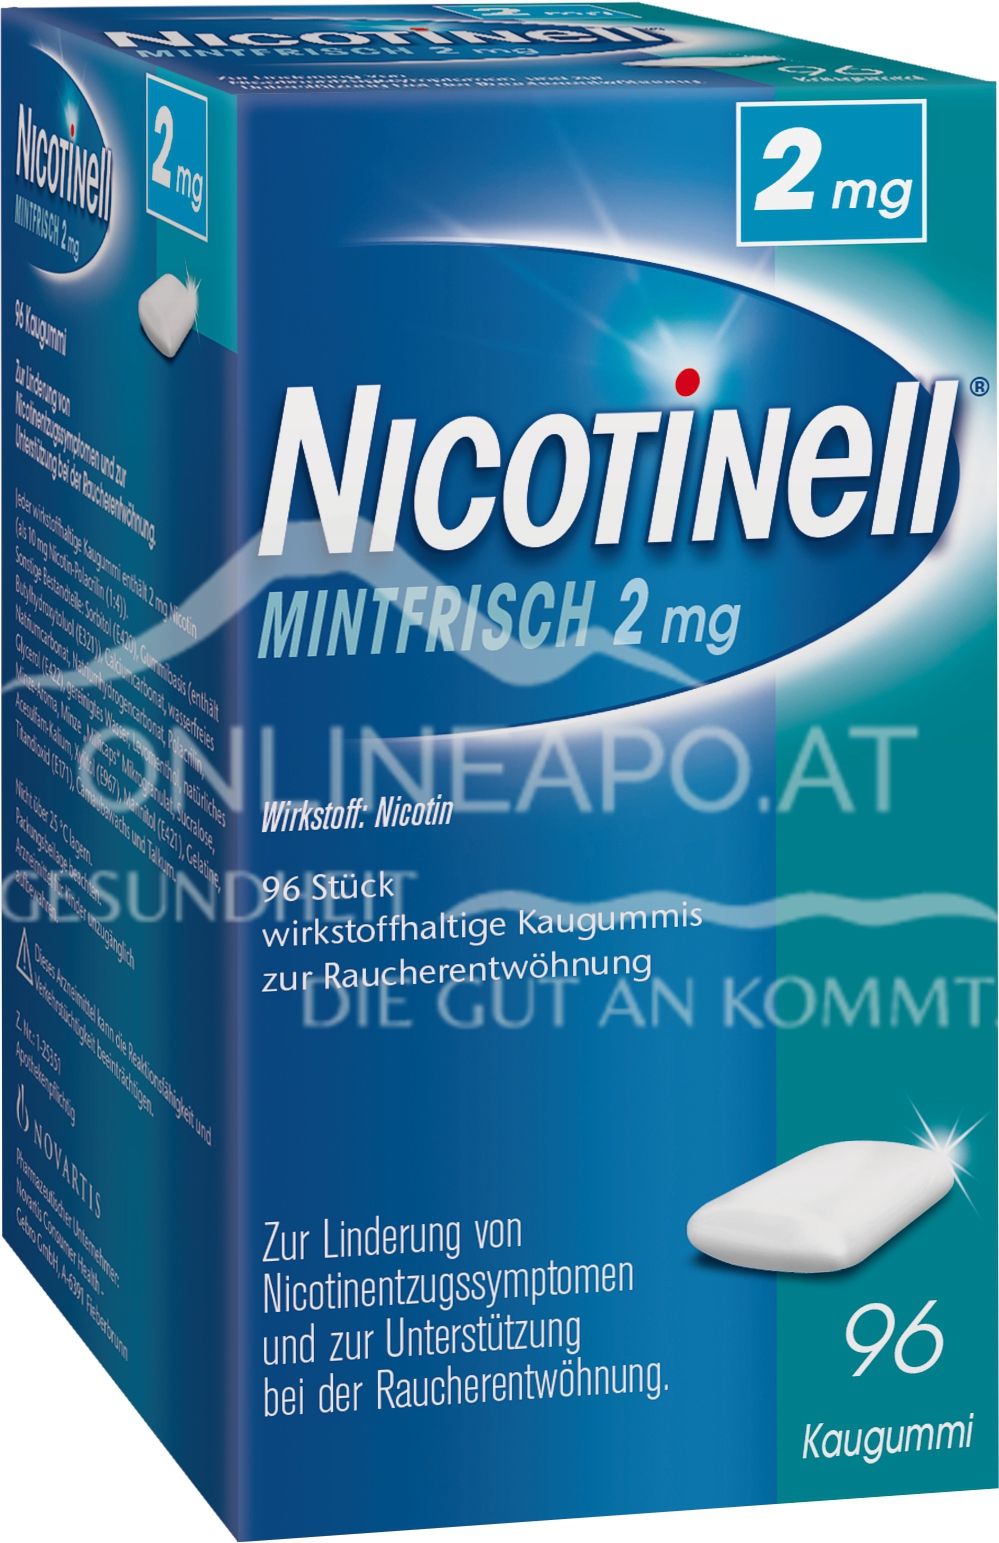 Nicotinell MintFrisch 2mg–wirkstoffhaltige Kaugummis zur Raucherentwöhnung